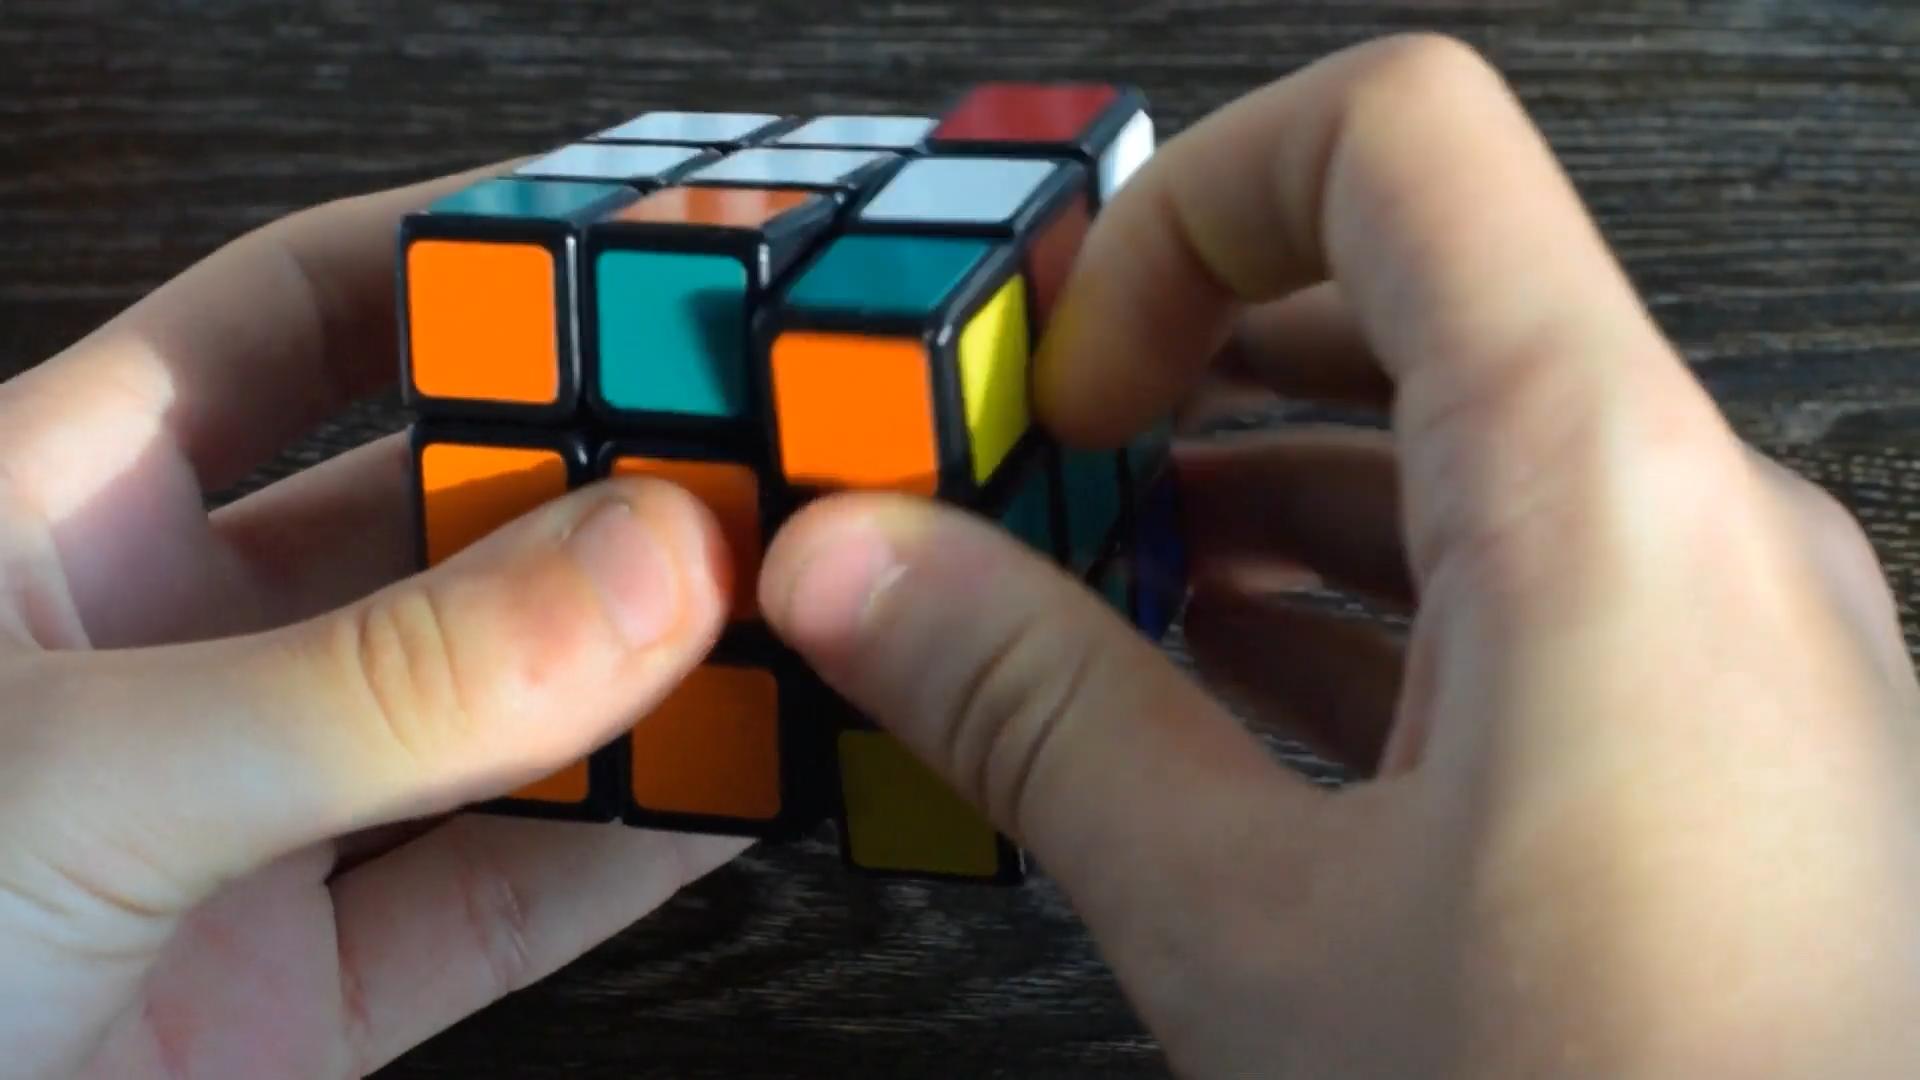 Mann löst Rubik's Cube in 1,2 Sekunden Kann das sein?